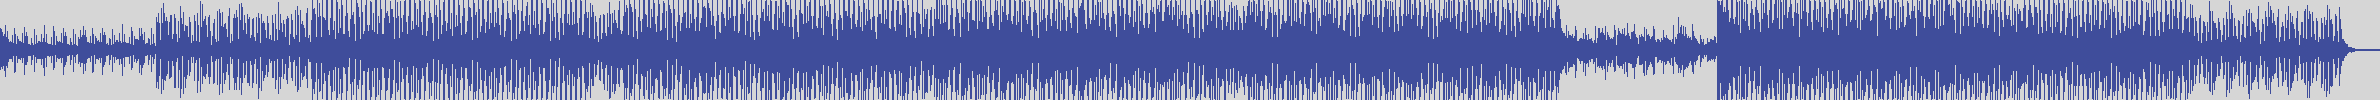 nf_boyz_records [NFY066] Joseph D-pierre - Follow Me [Original Mix] audio wave form